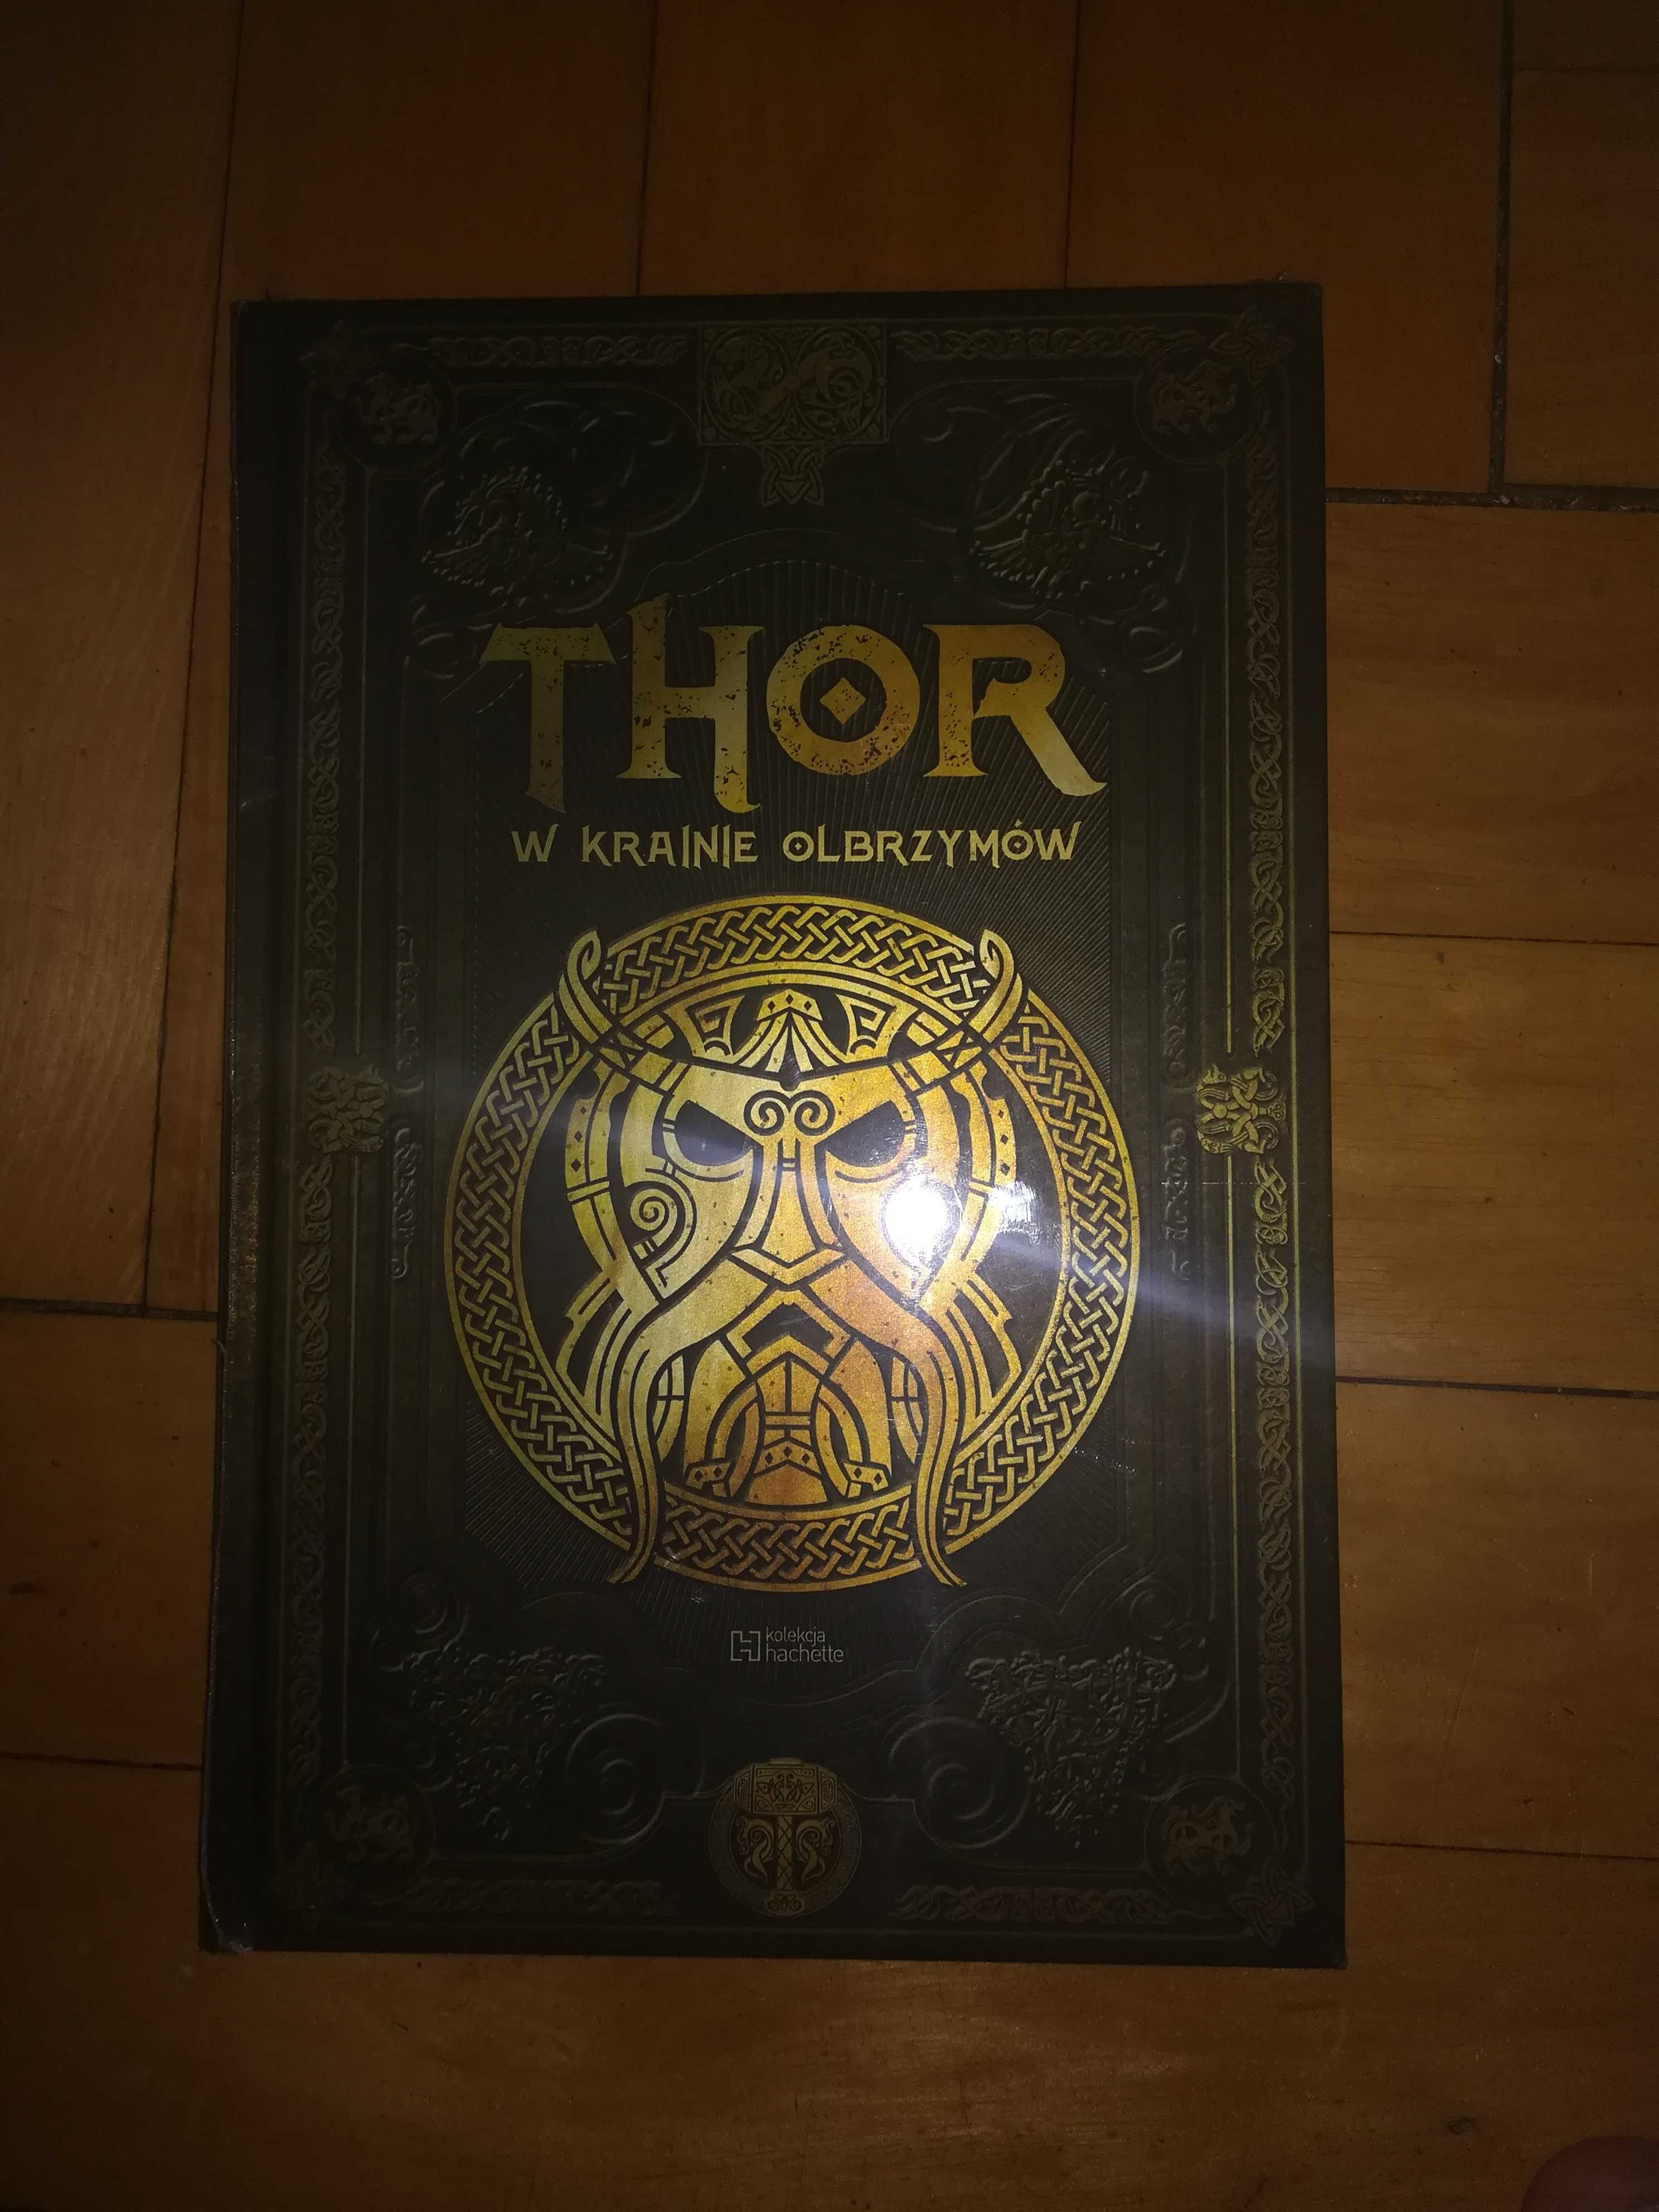 Thor - w krainie olbrzymów (saga Thora tom 4) MITOLOGIA NORDYCKA -